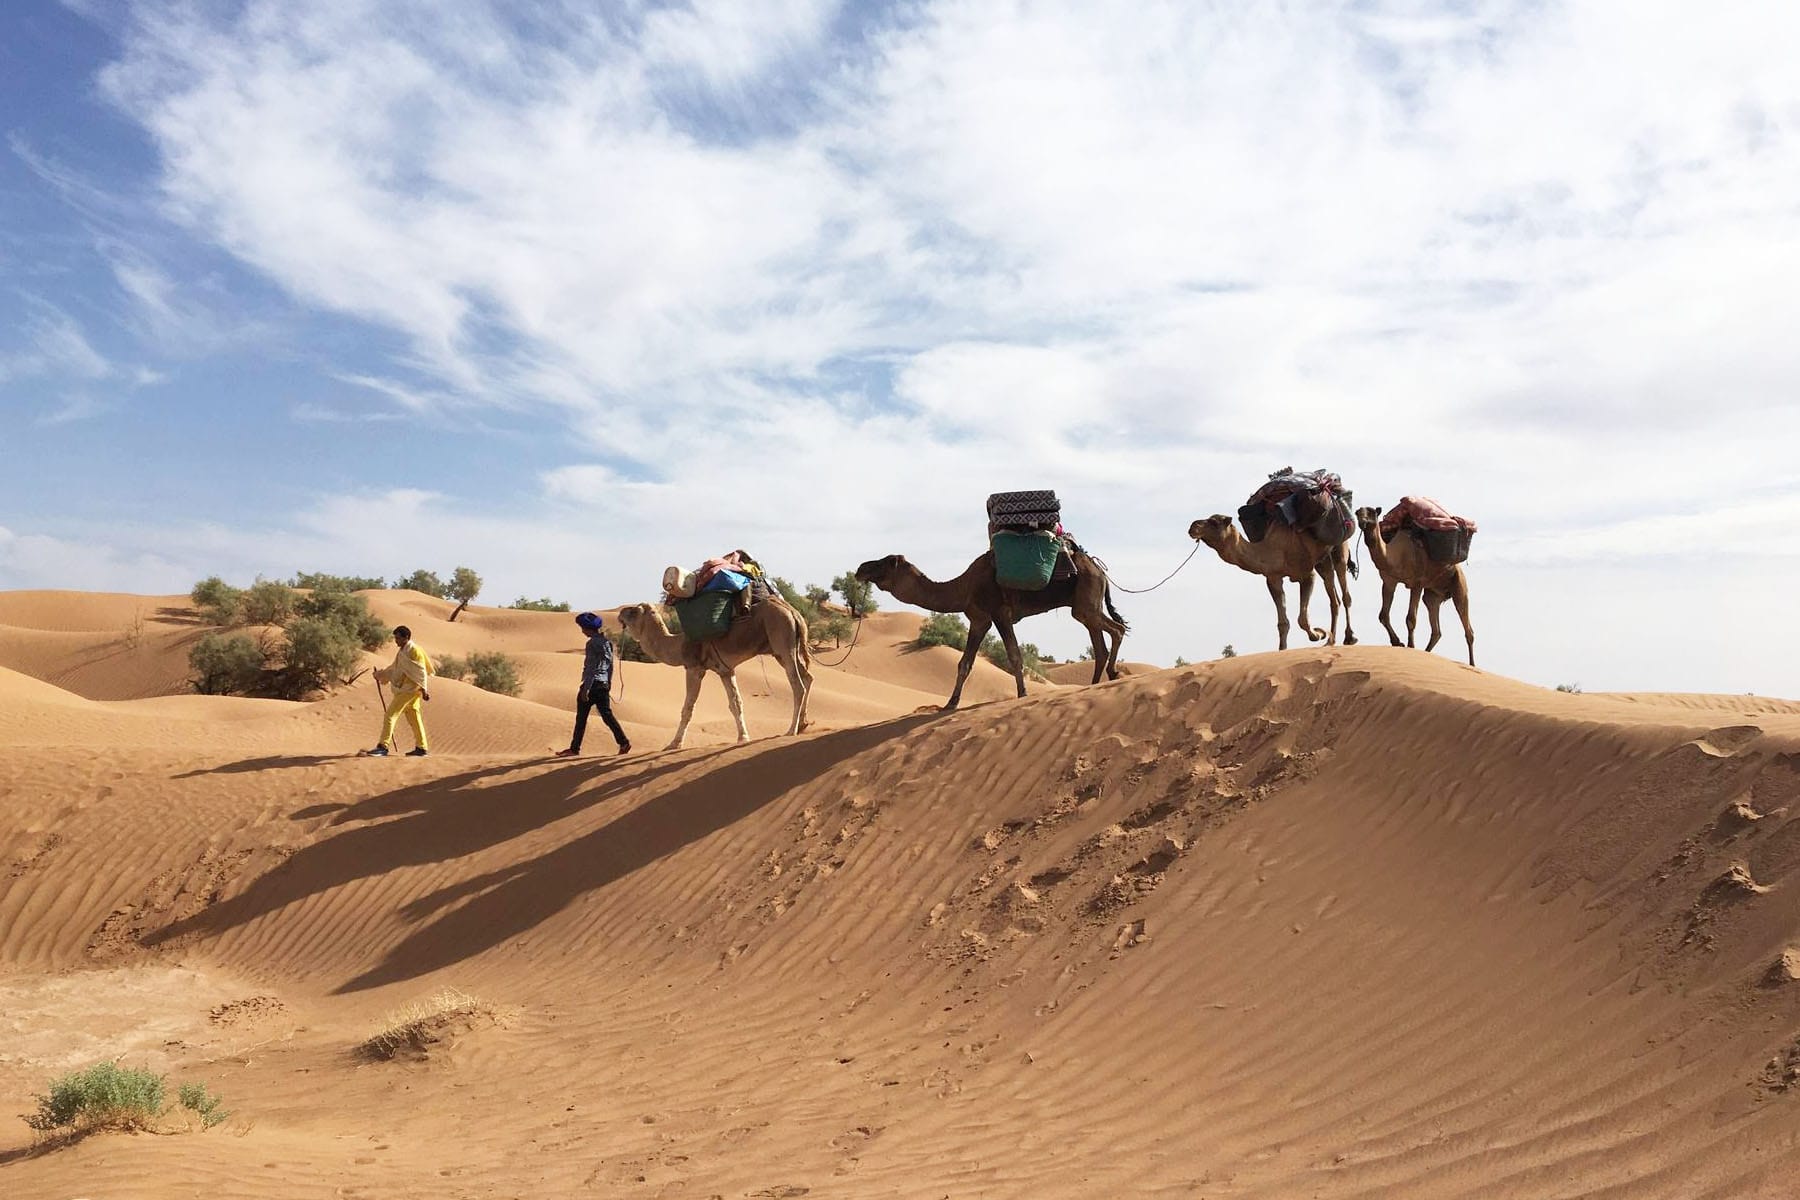 Randonnée chamelière dans le Sahara tunisien